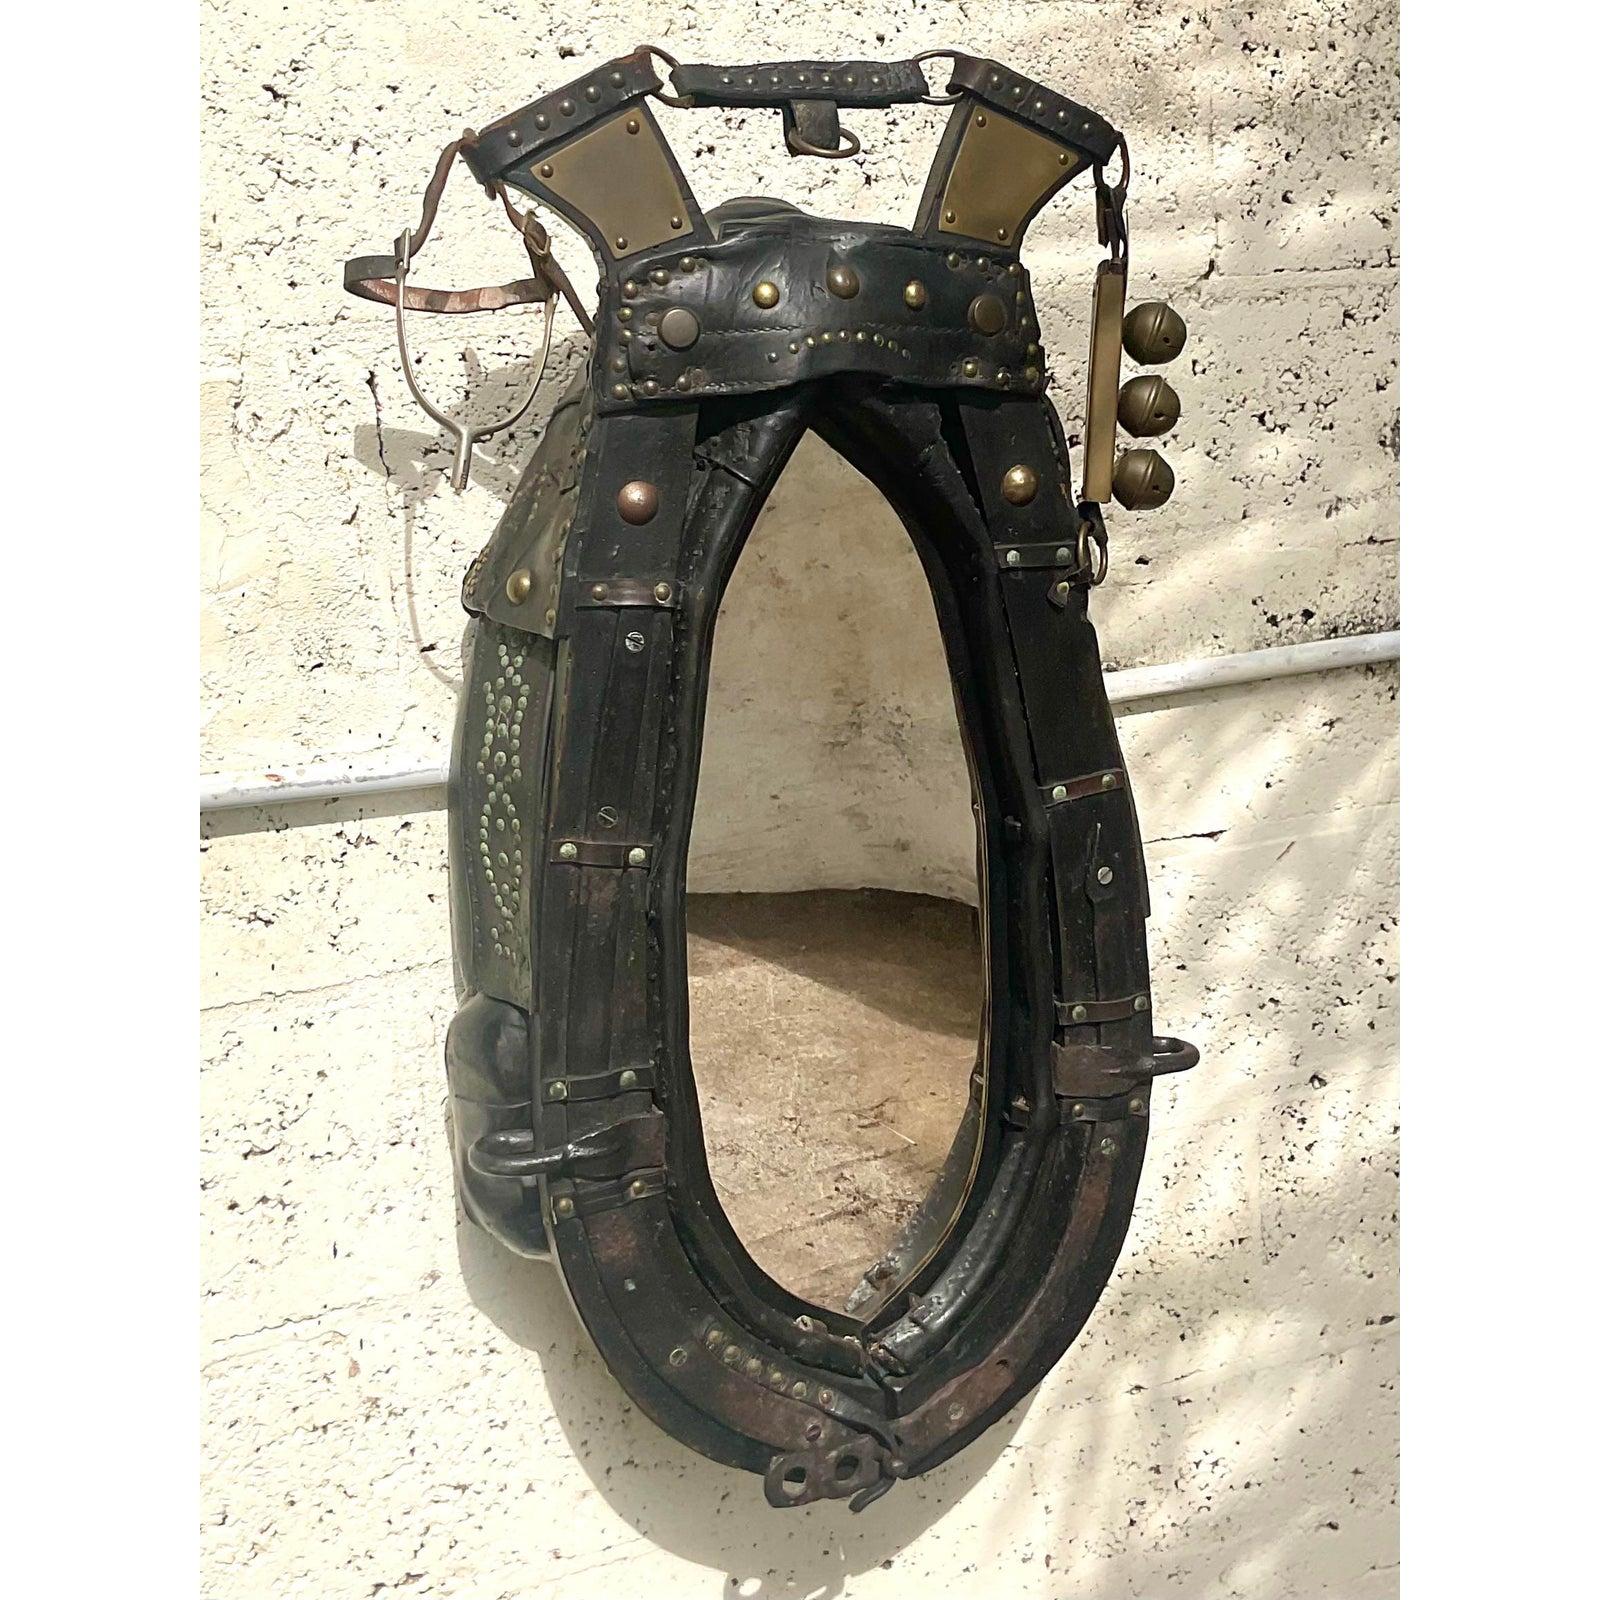 Un fabuleux harnais de cheval ancien qui a été transformé en miroir. Ils sont utilisés pour les chevaux de traîneau ou les chevaux de trait. Magnifique cuir vieilli avec de fantastiques détails de rivets. Les cloches et les étriers ajoutent au